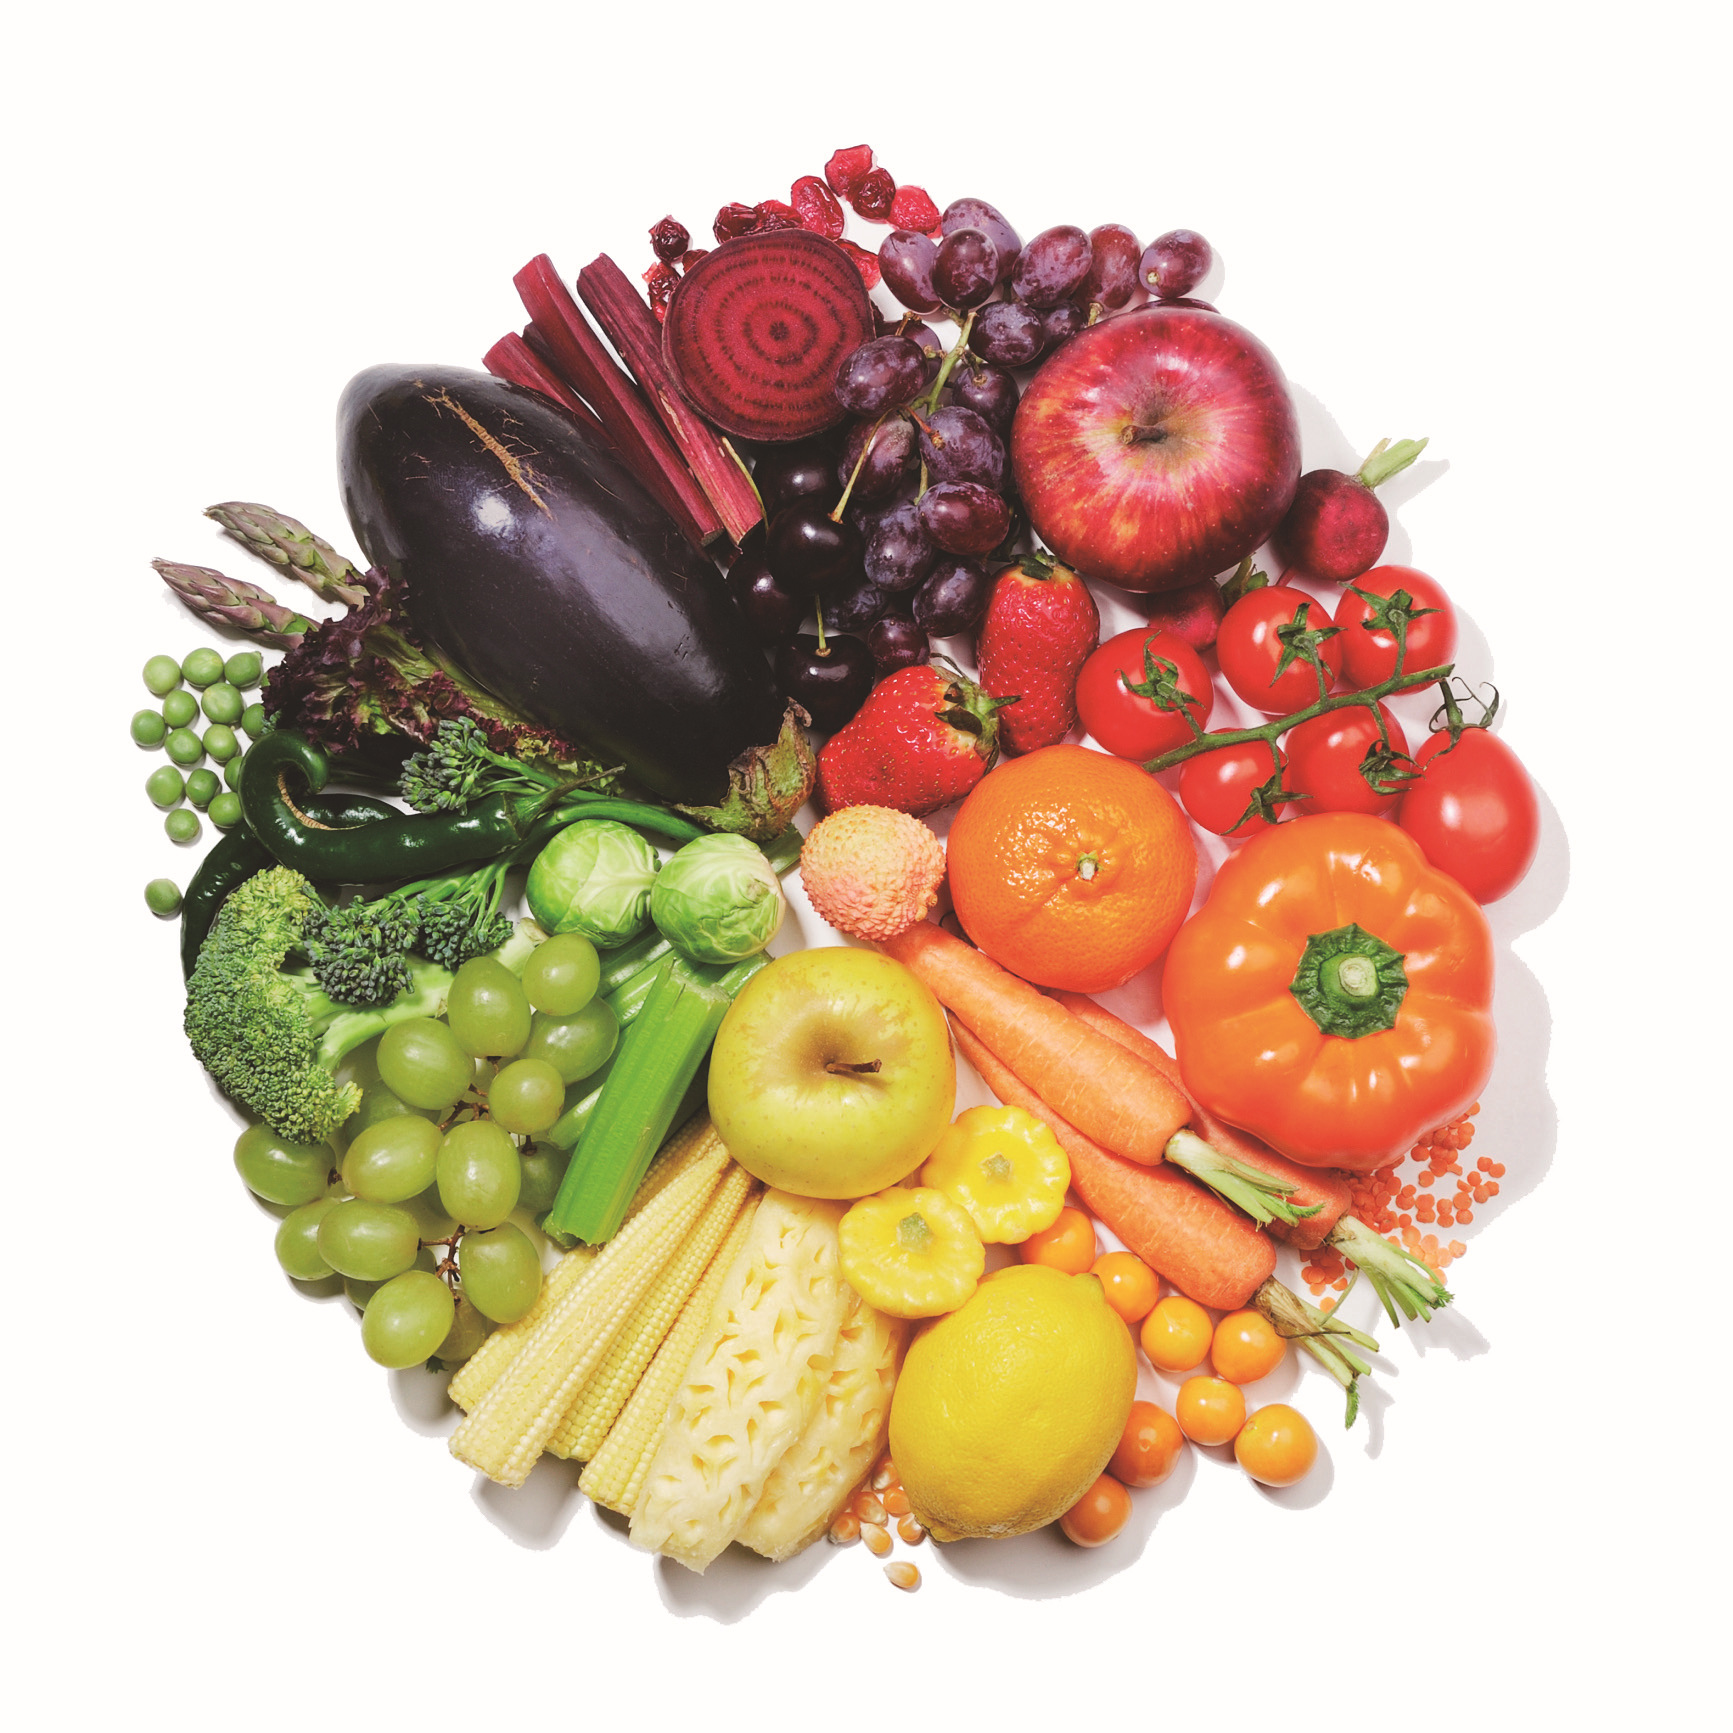 Ешь больше фруктов и овощей. Овощи и фрукты. Разные фрукты и овощи. Здоровая еда. Obishi i frukti.